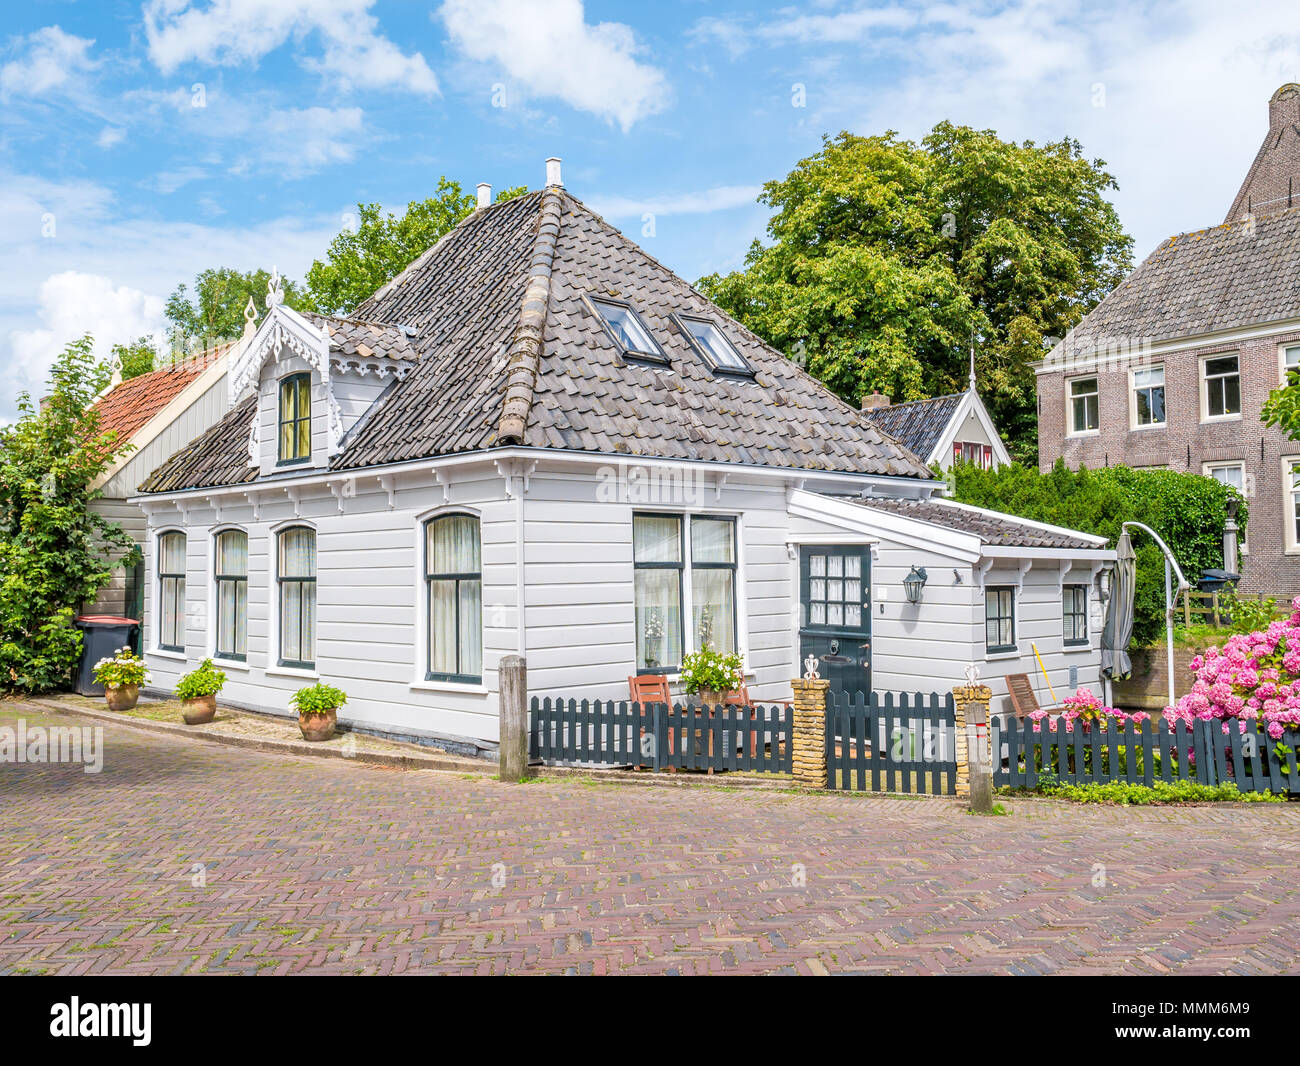 Avant de maison en bois dans la vieille ville historique de village Broek in Waterland, Hollande du Nord, Pays-Bas Banque D'Images